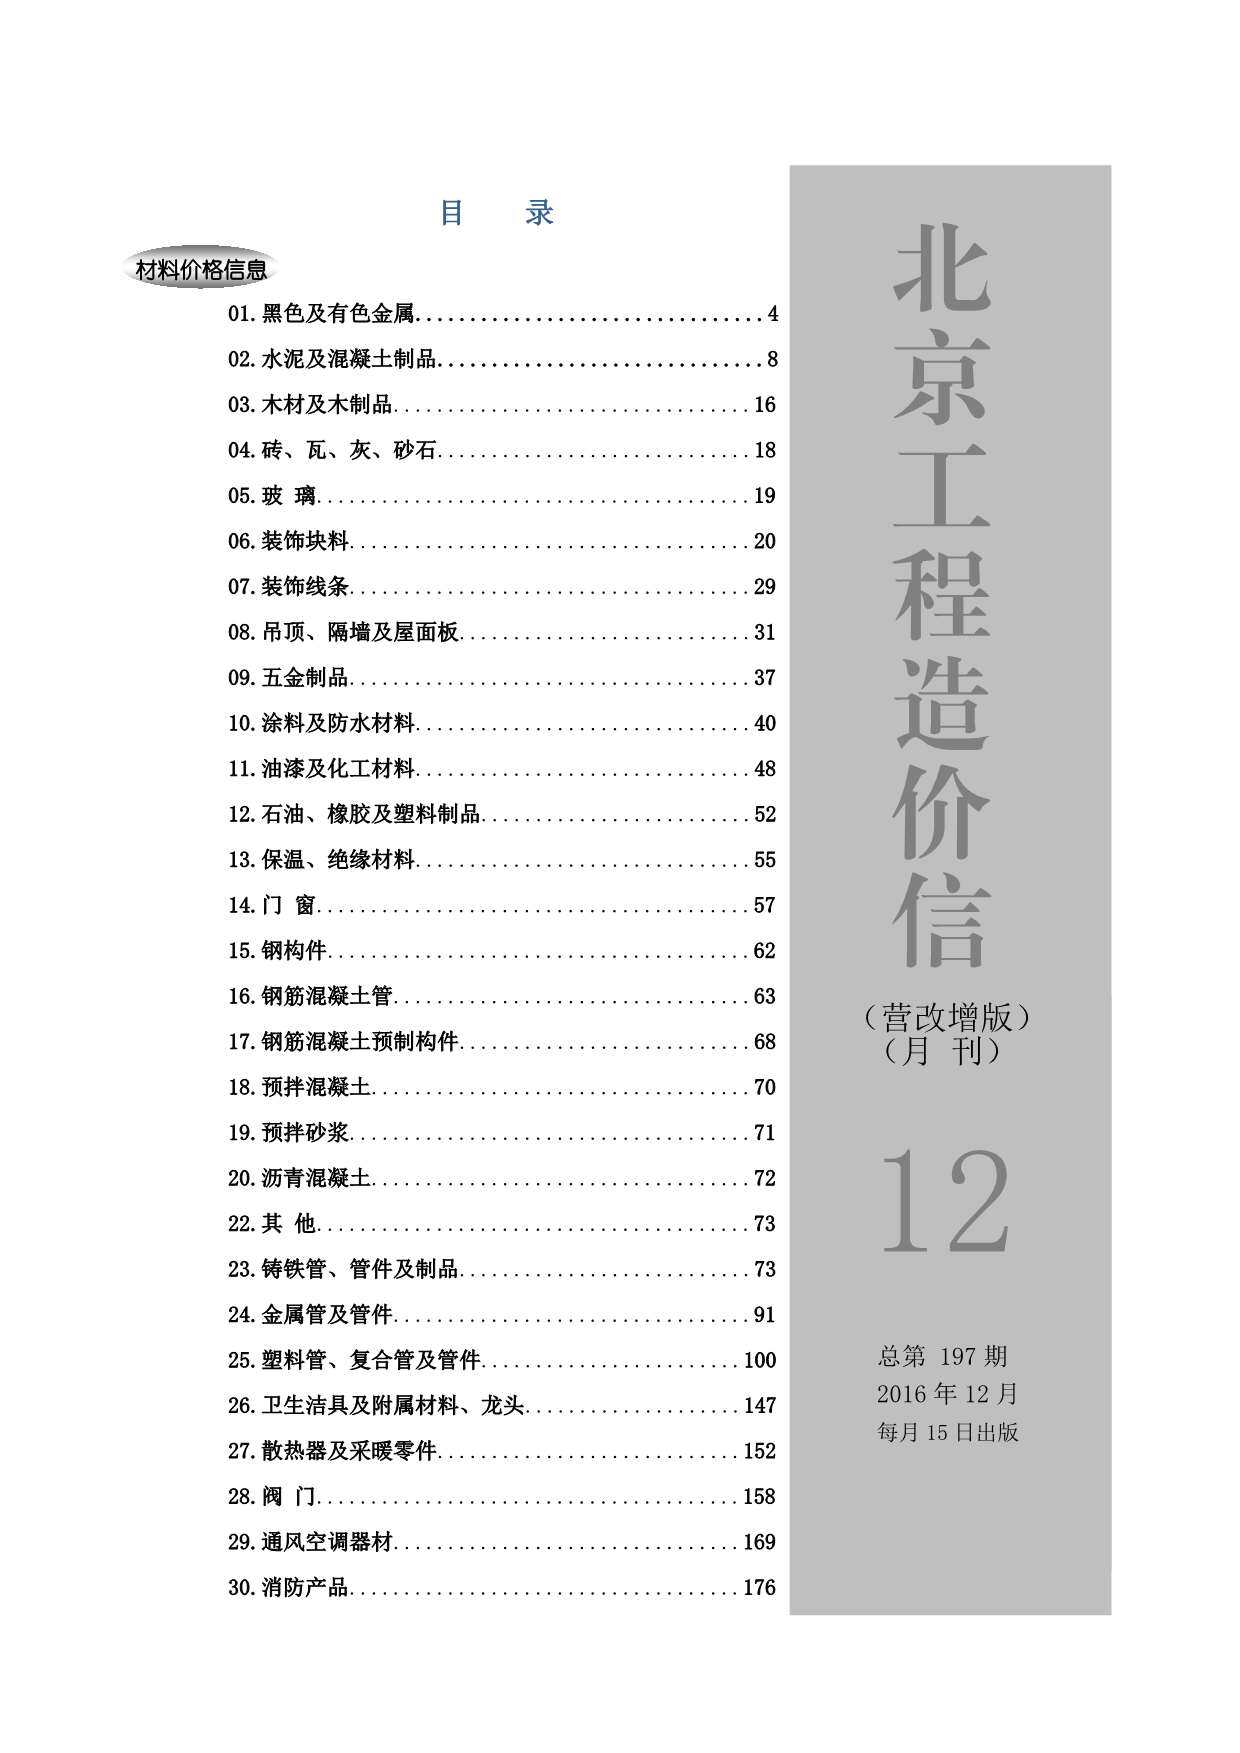 北京市2016年第12期工程造价信息pdf电子版